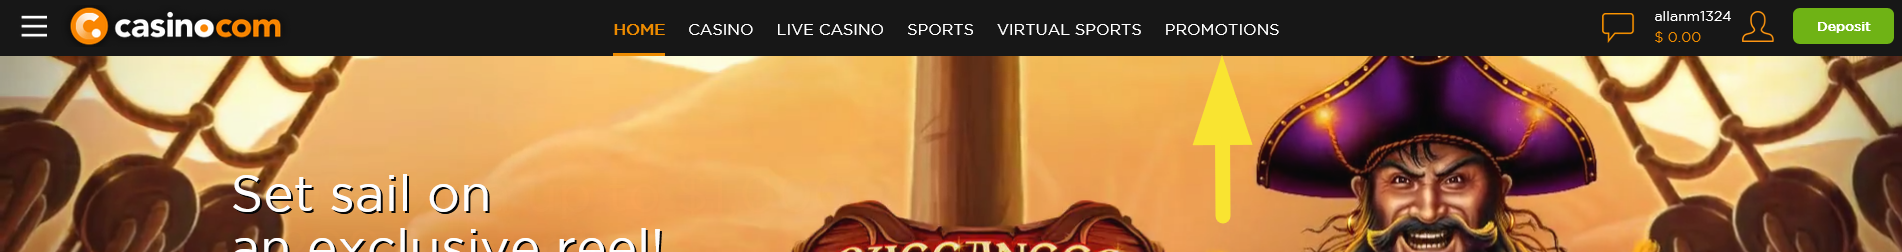 Sahara sands casino bonus codes 2019